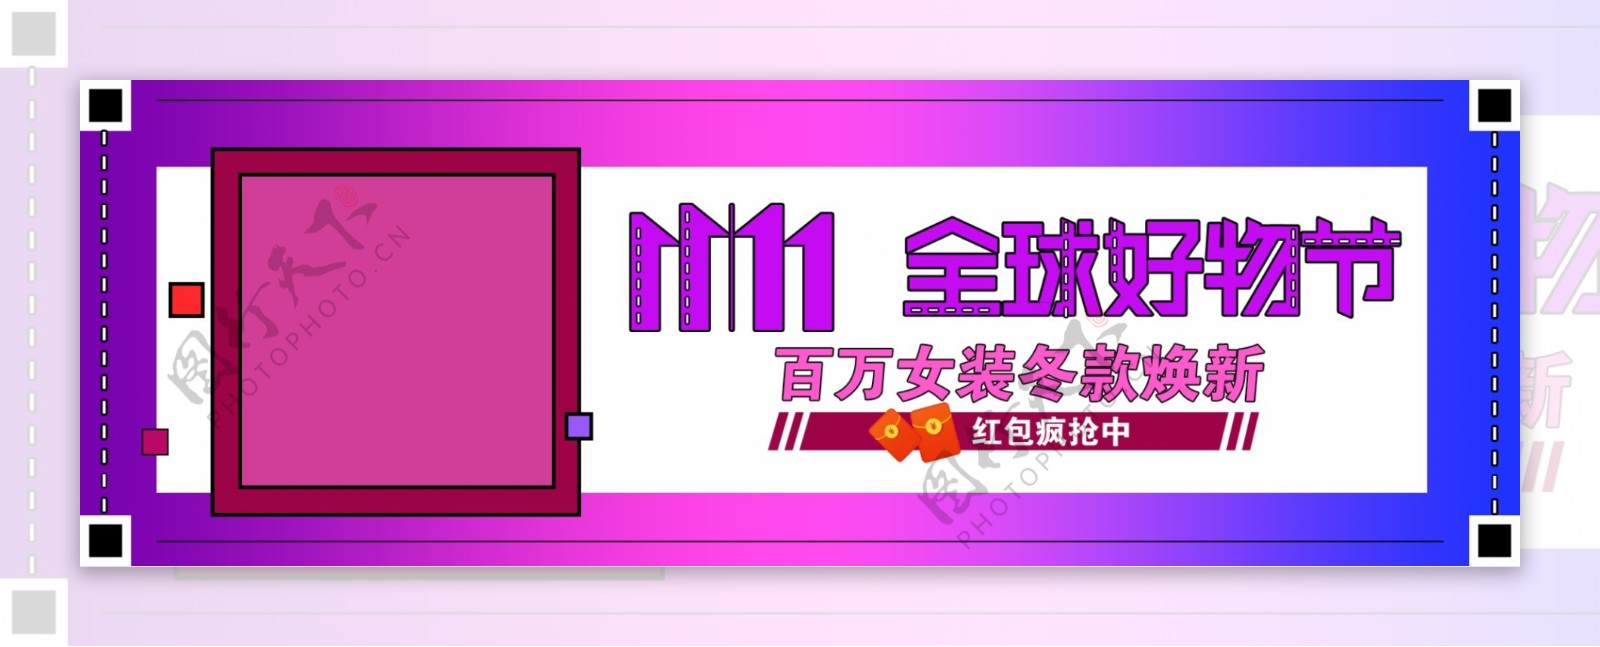 11.11全球好物节紫色渐变卡通女装京东好物节banner